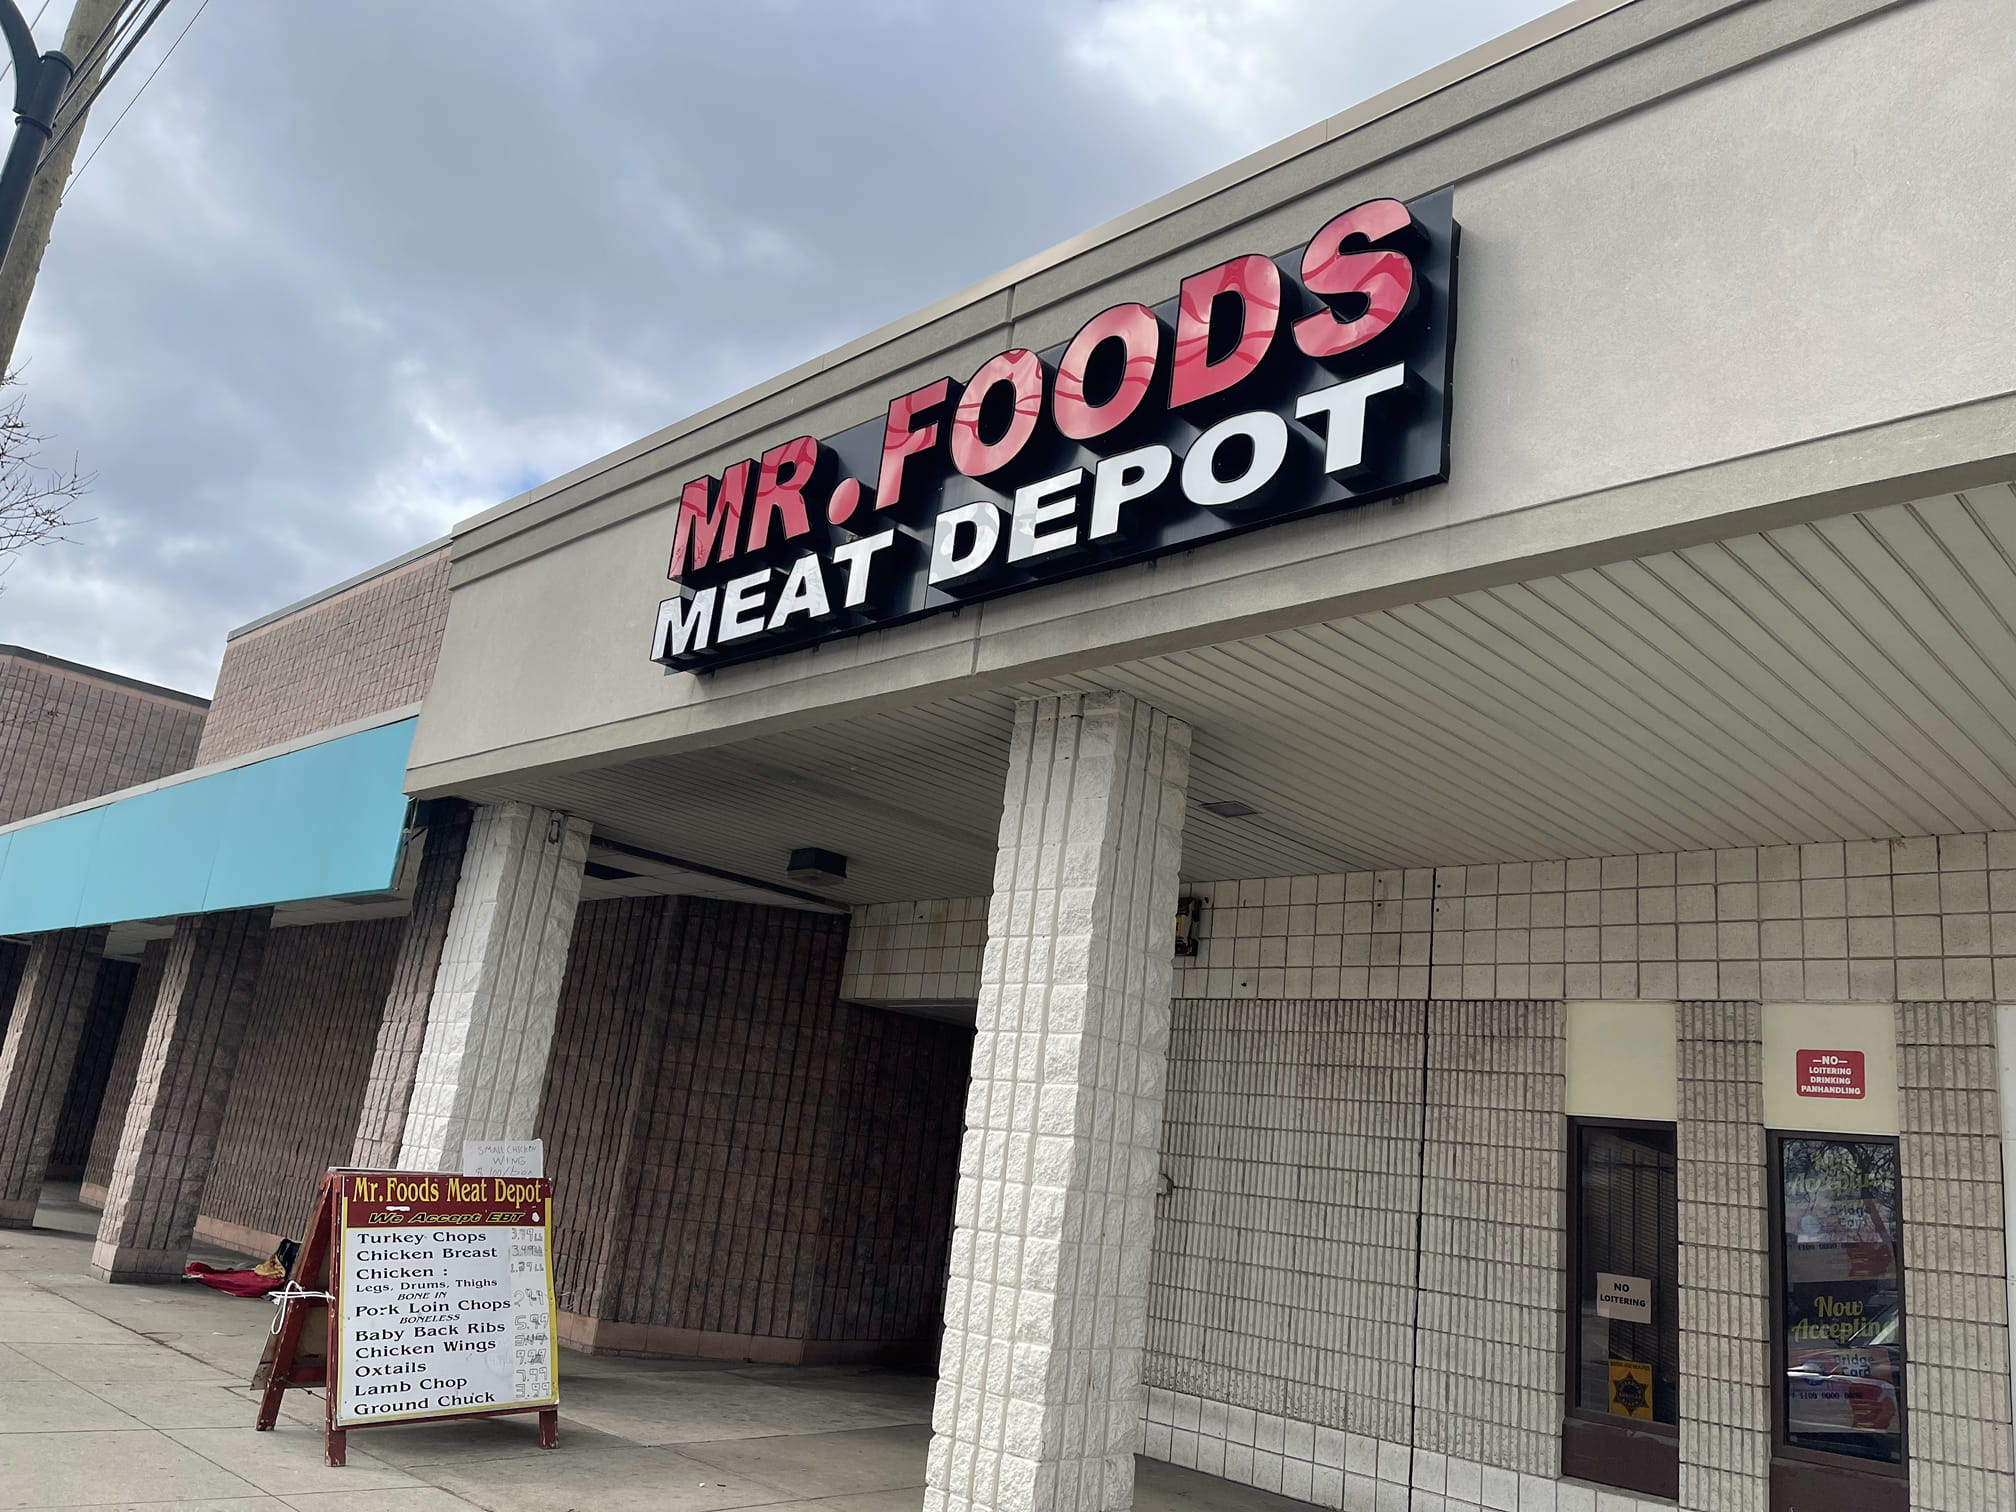 Mr foods meat depot